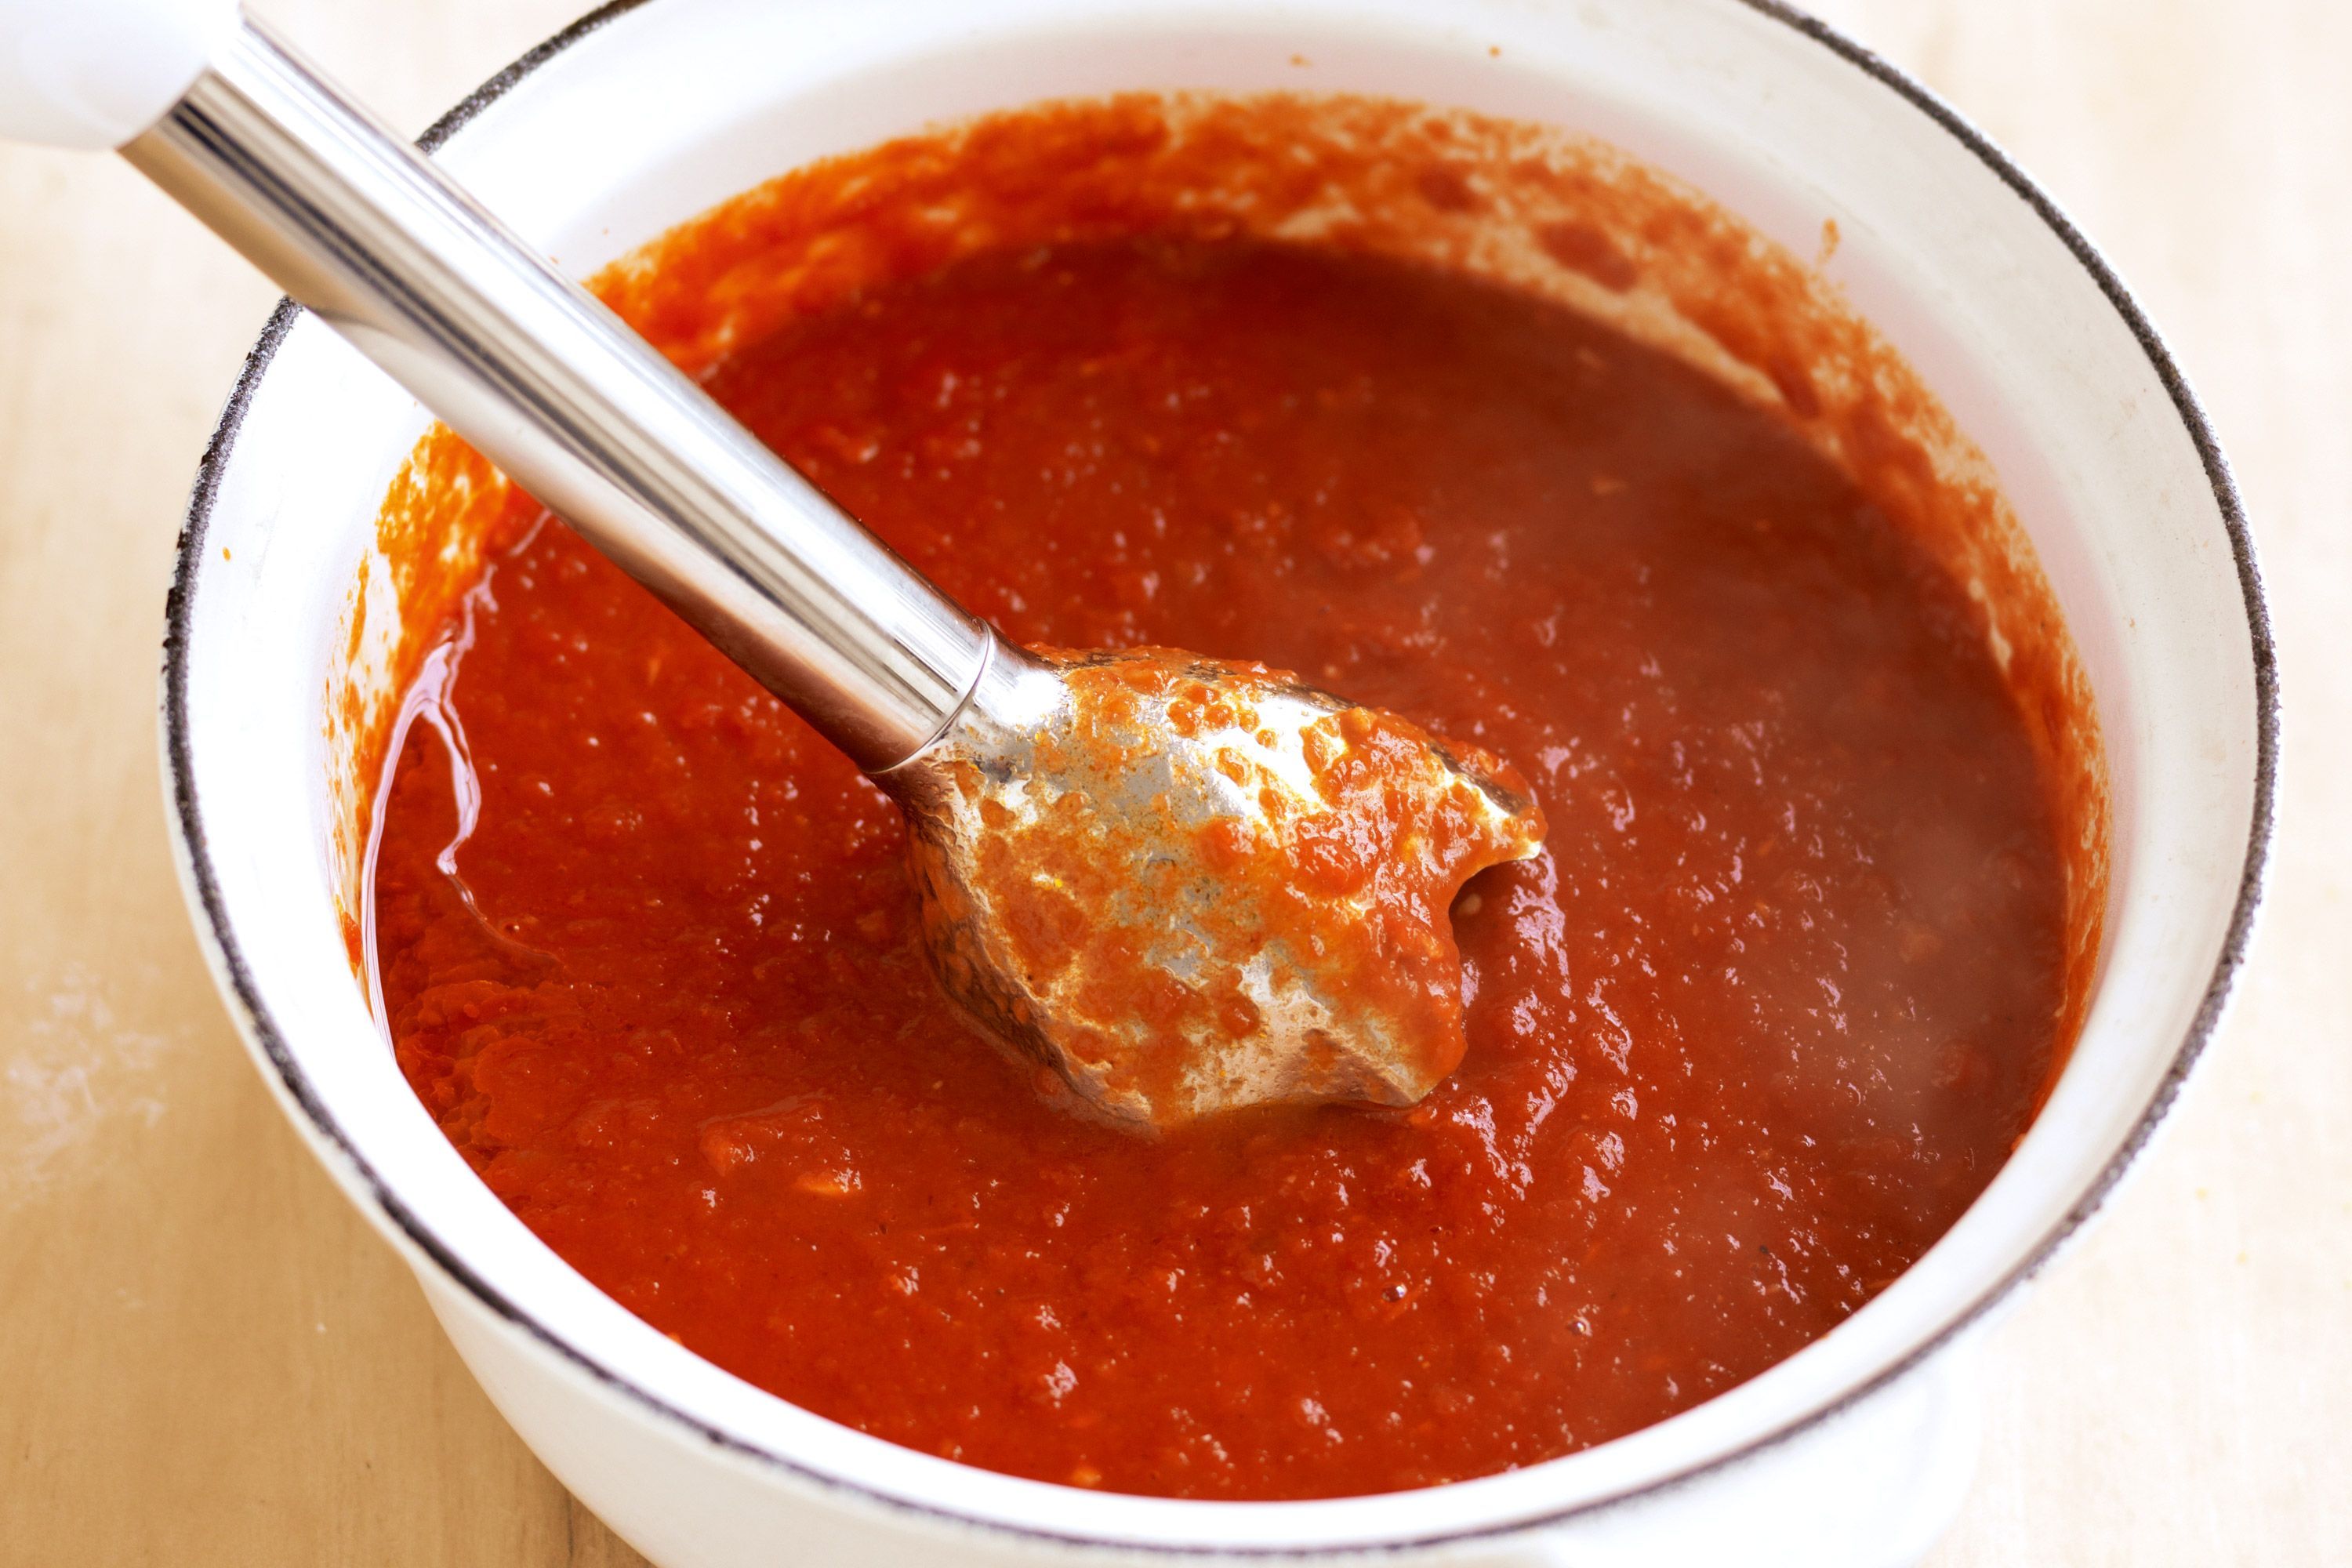 томатный соус из помидоров для пиццы в домашних условиях фото 105